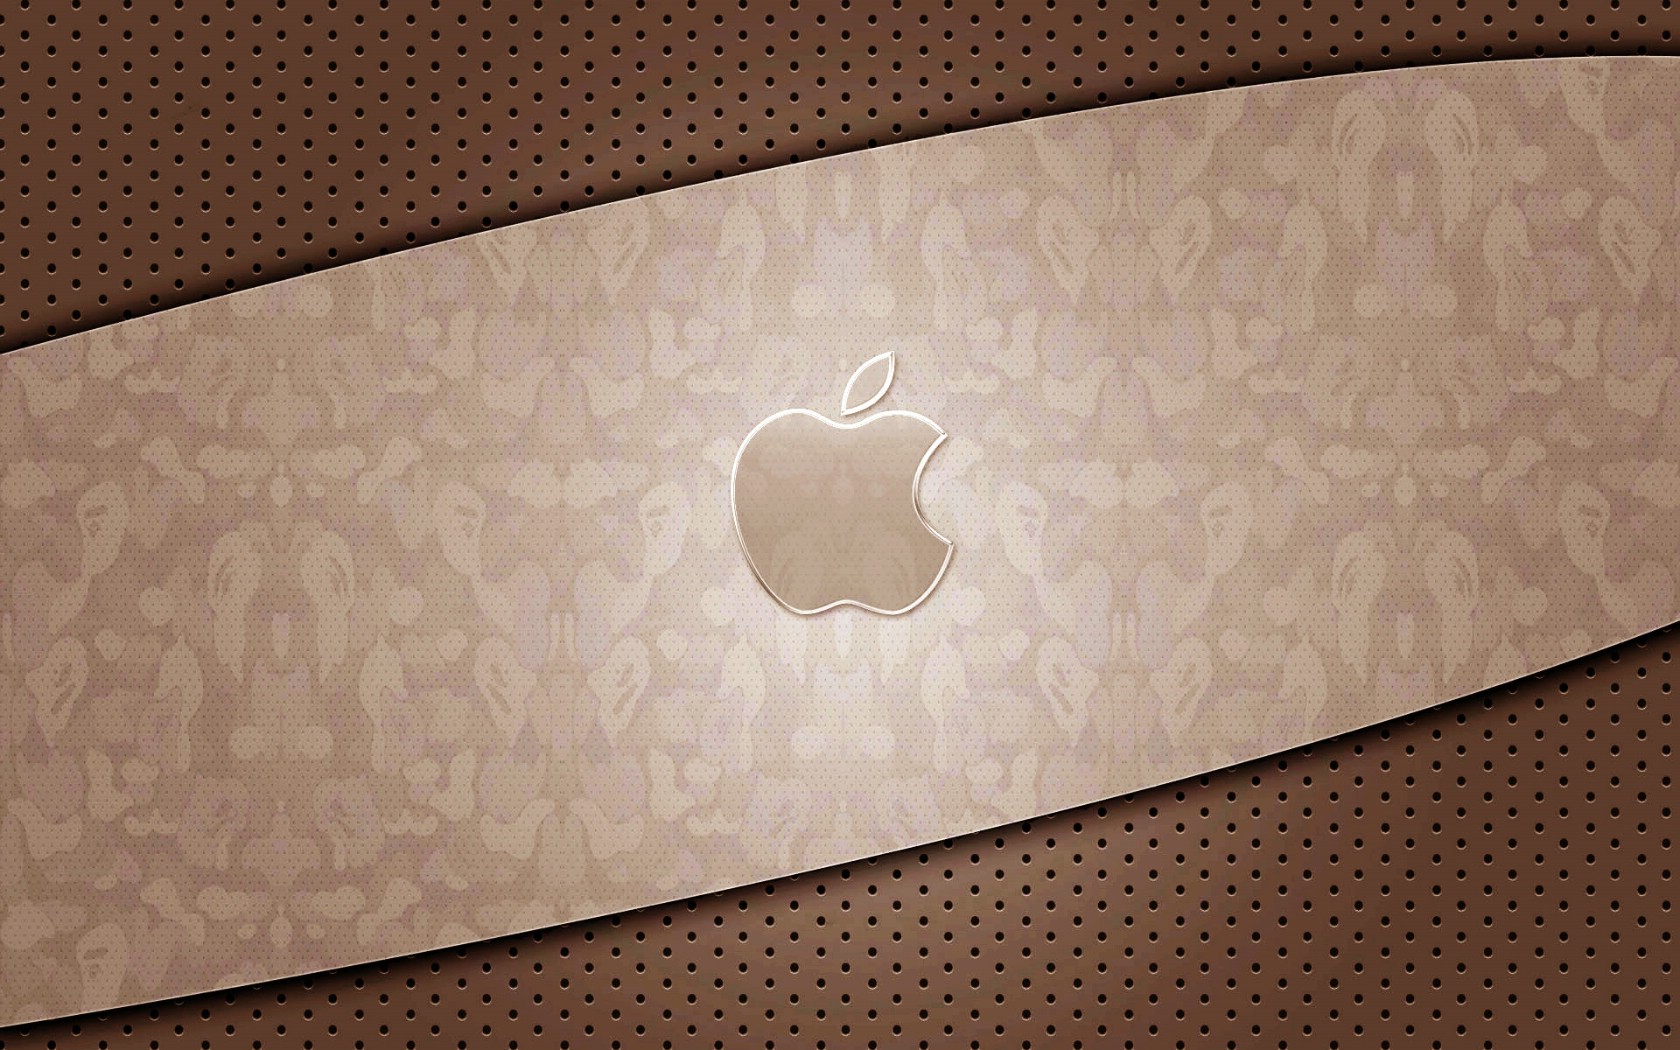 壁纸1680x1050Apple主题壁纸壁纸 Apple主题壁纸壁纸 Apple主题壁纸图片 Apple主题壁纸素材 其他壁纸 其他图库 其他图片素材桌面壁纸